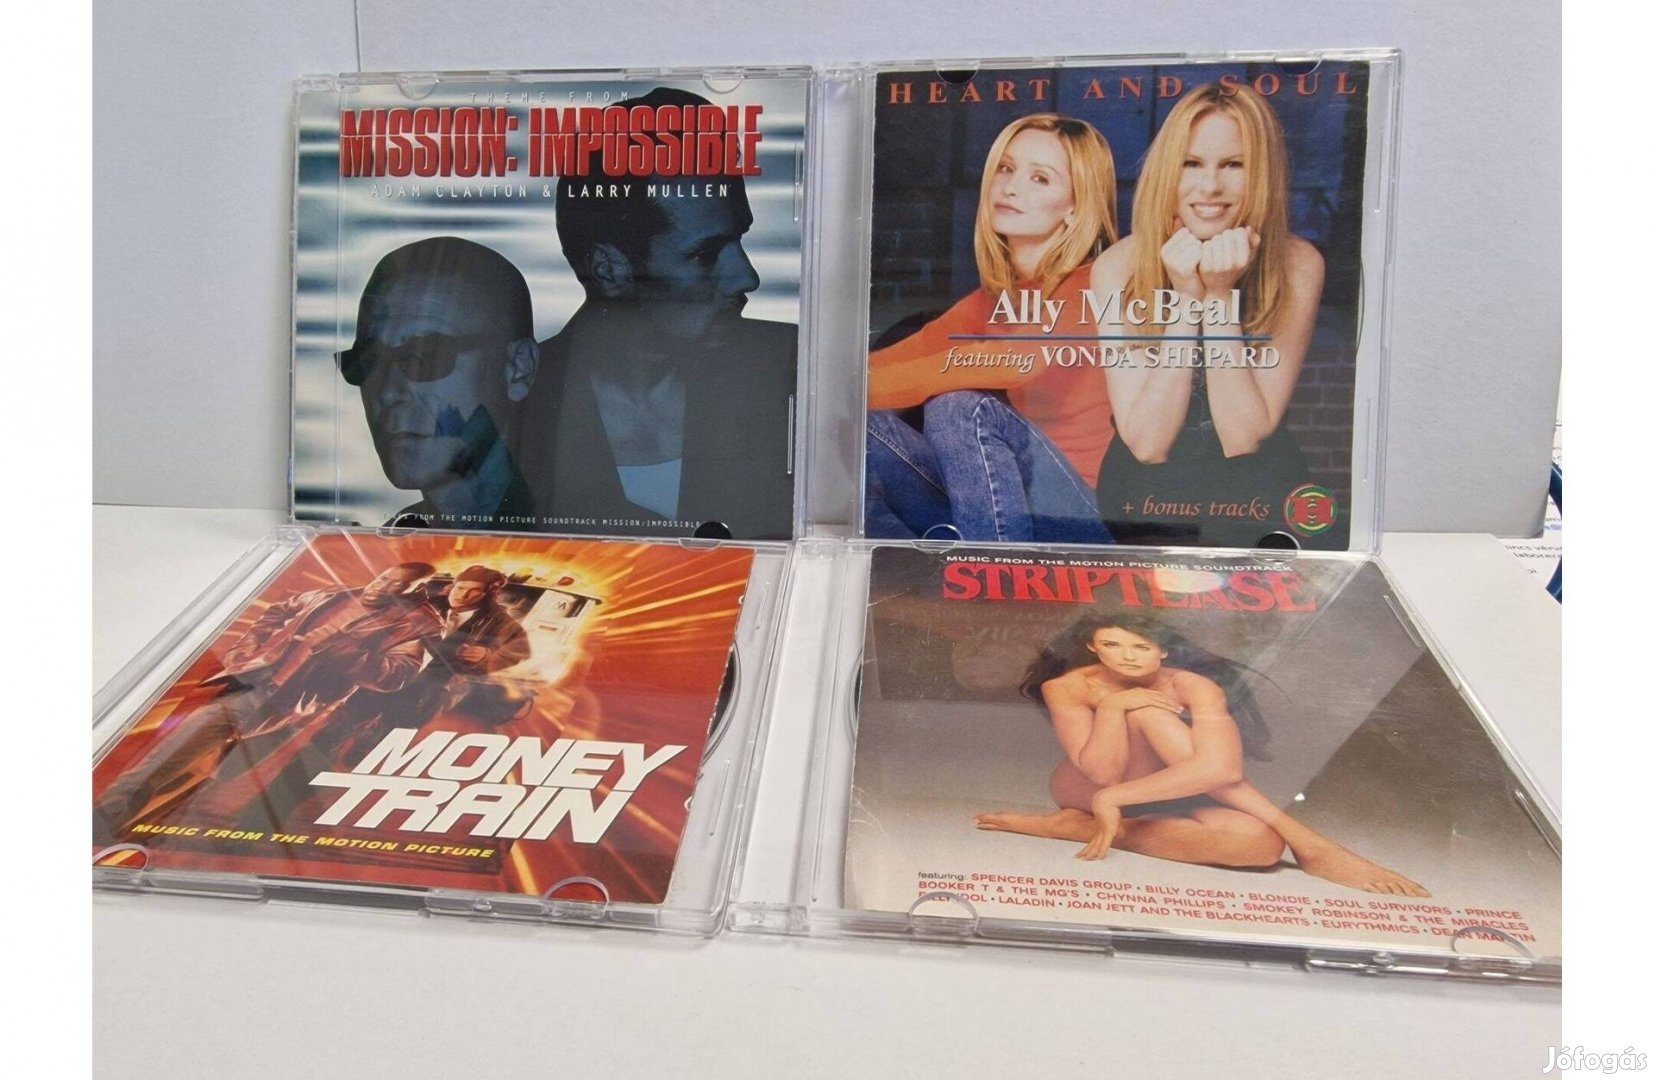 Filmzenei eredeti, karcmentes CD-k eladók 1.500 FT/db áron